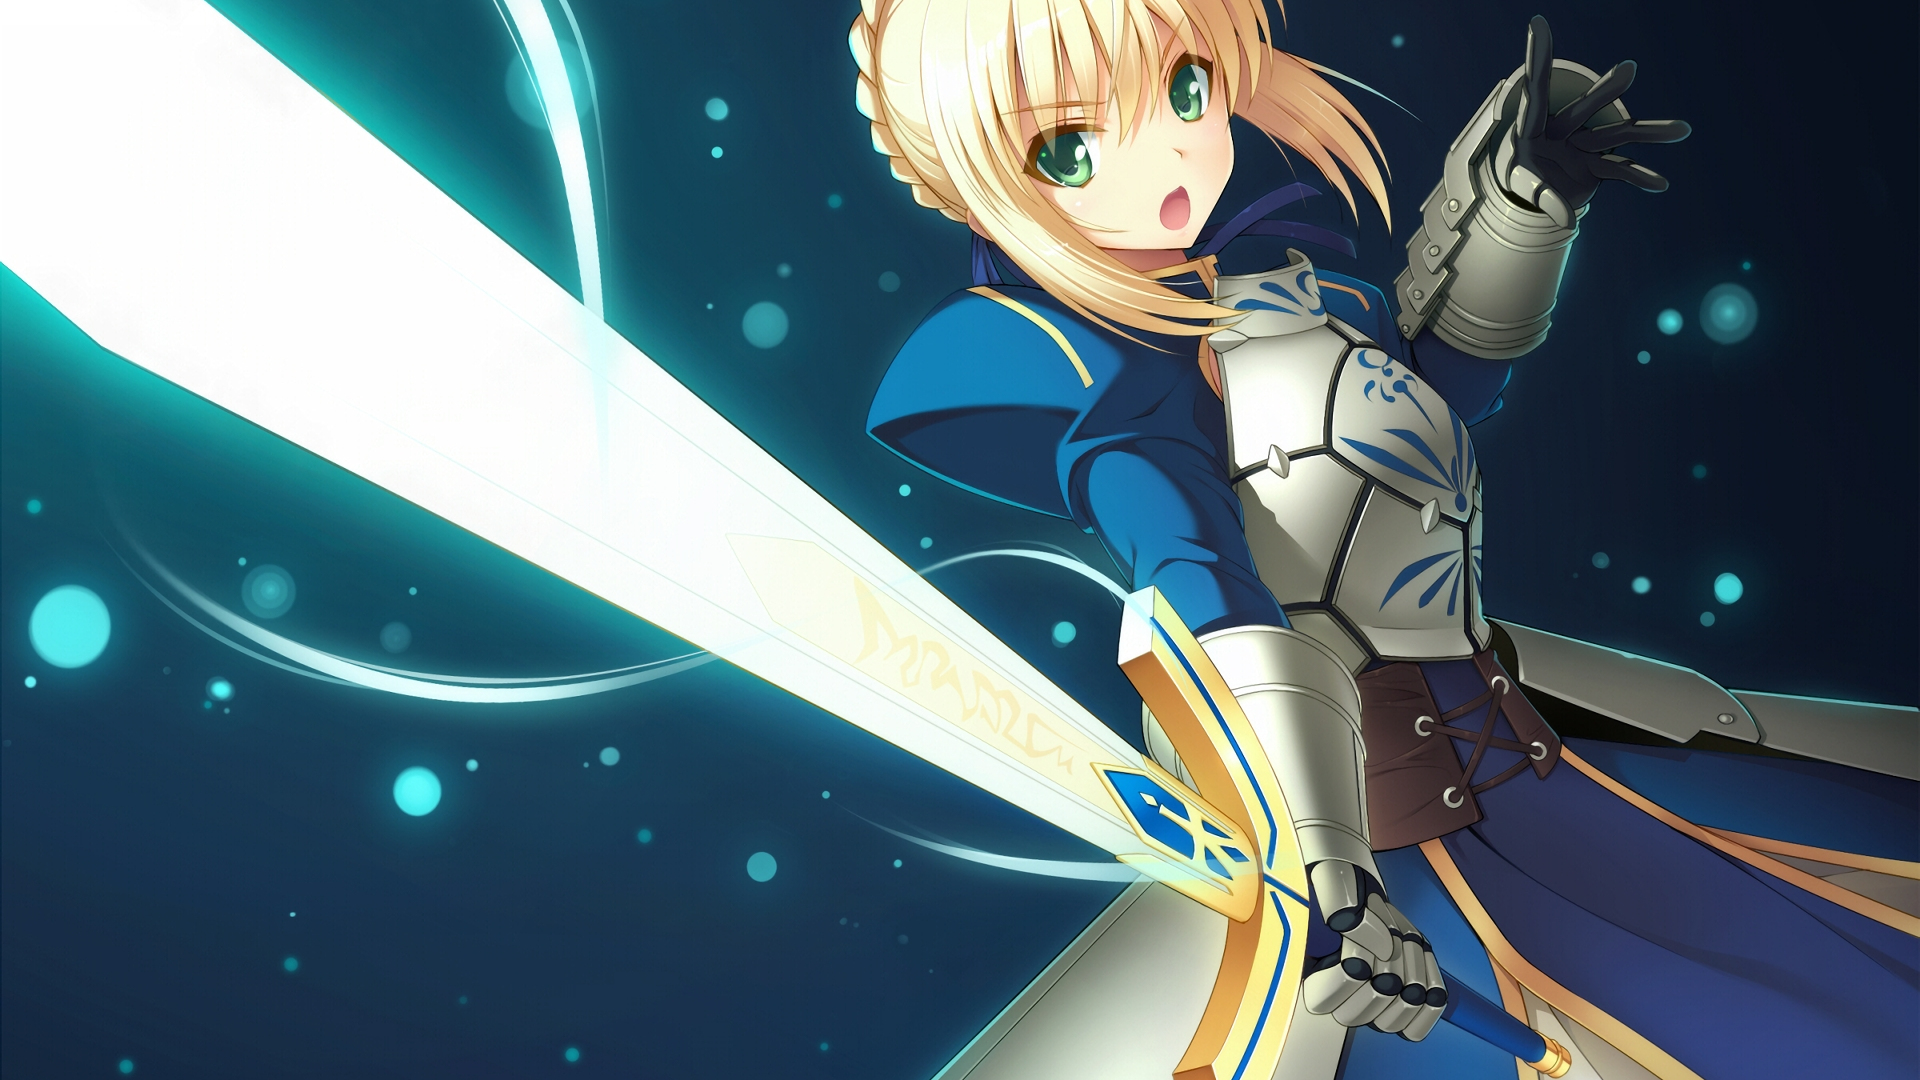 Desktop Wallpaper Sword, Anime Girl, Saber, Fate Grand Order, HD Image, Picture, Background, Es37le